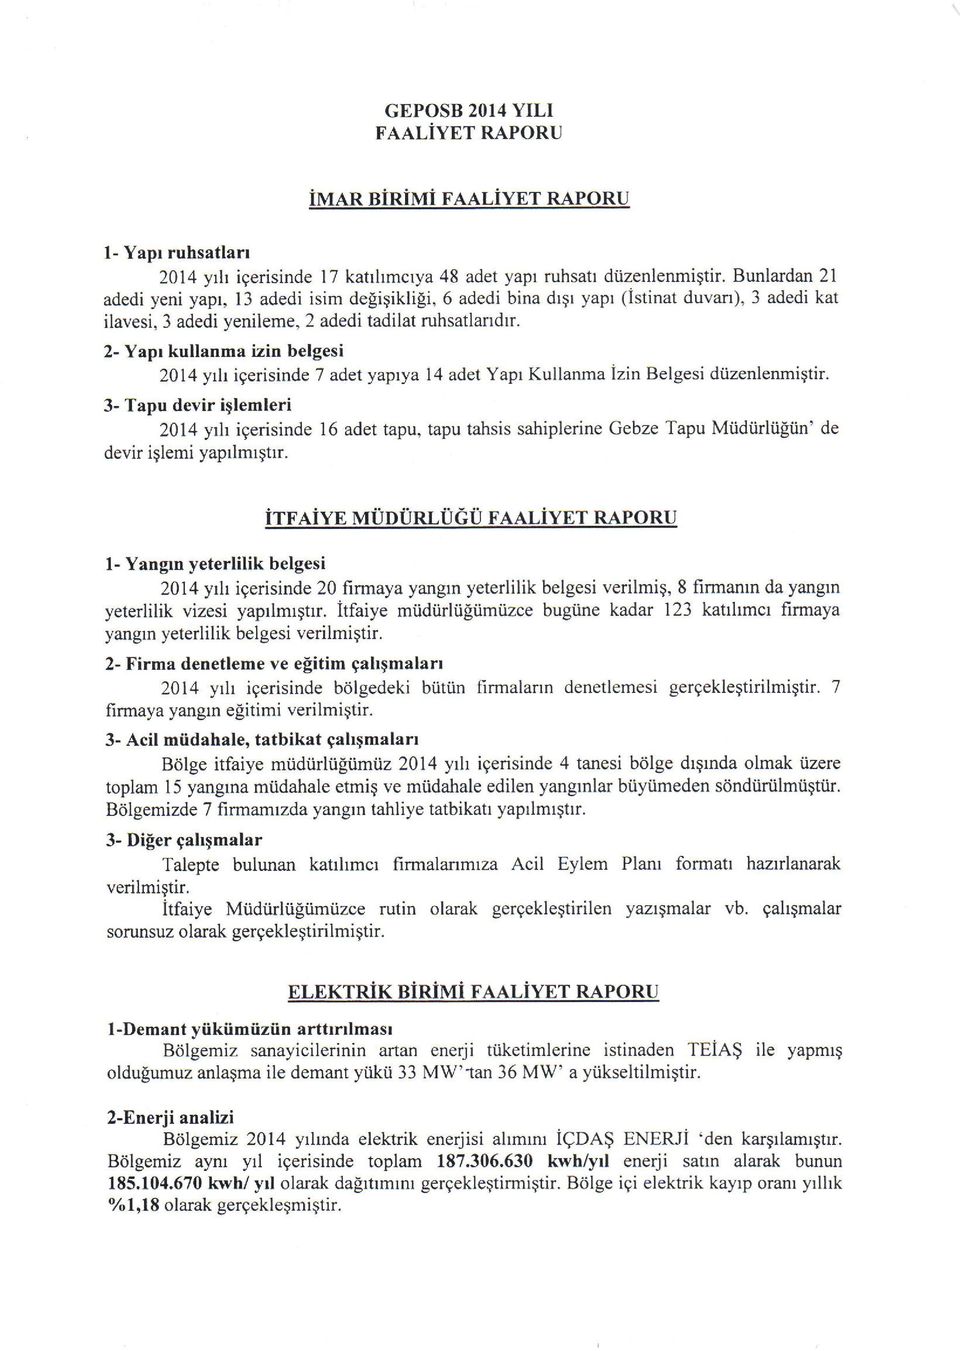 2- Yapr kullanma izin belgesi 2014 yrh igerisinde 7 adet yaprya 14 adet Yapr Kullanma izin Belgesi diizenlenmiqtir.